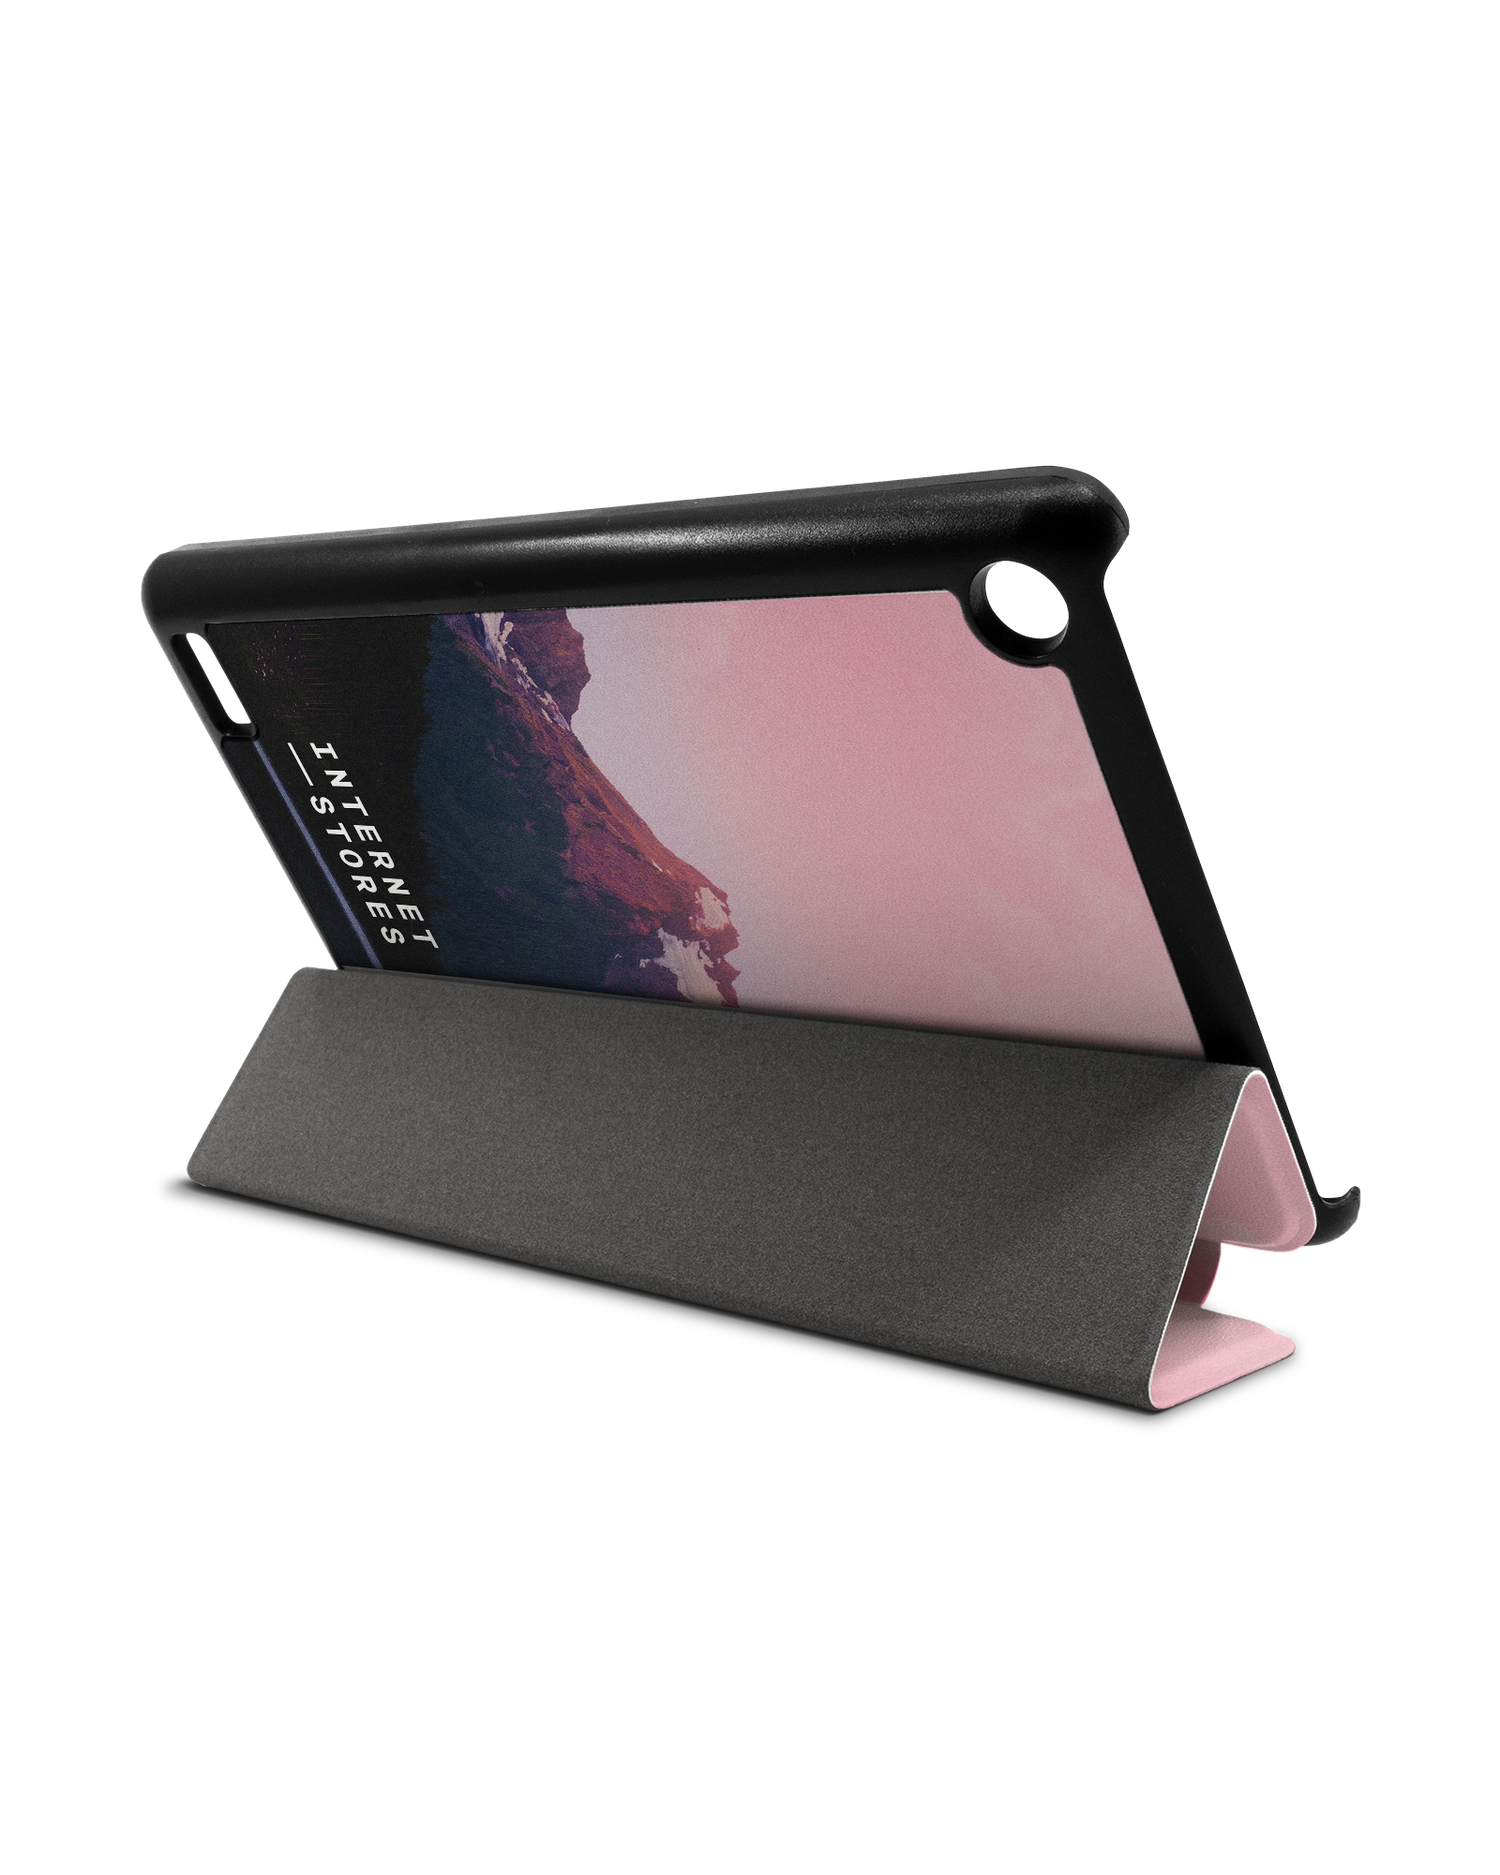 Lake Tablet Smart Case für Amazon Fire 7: Aufgestellt im Querformat